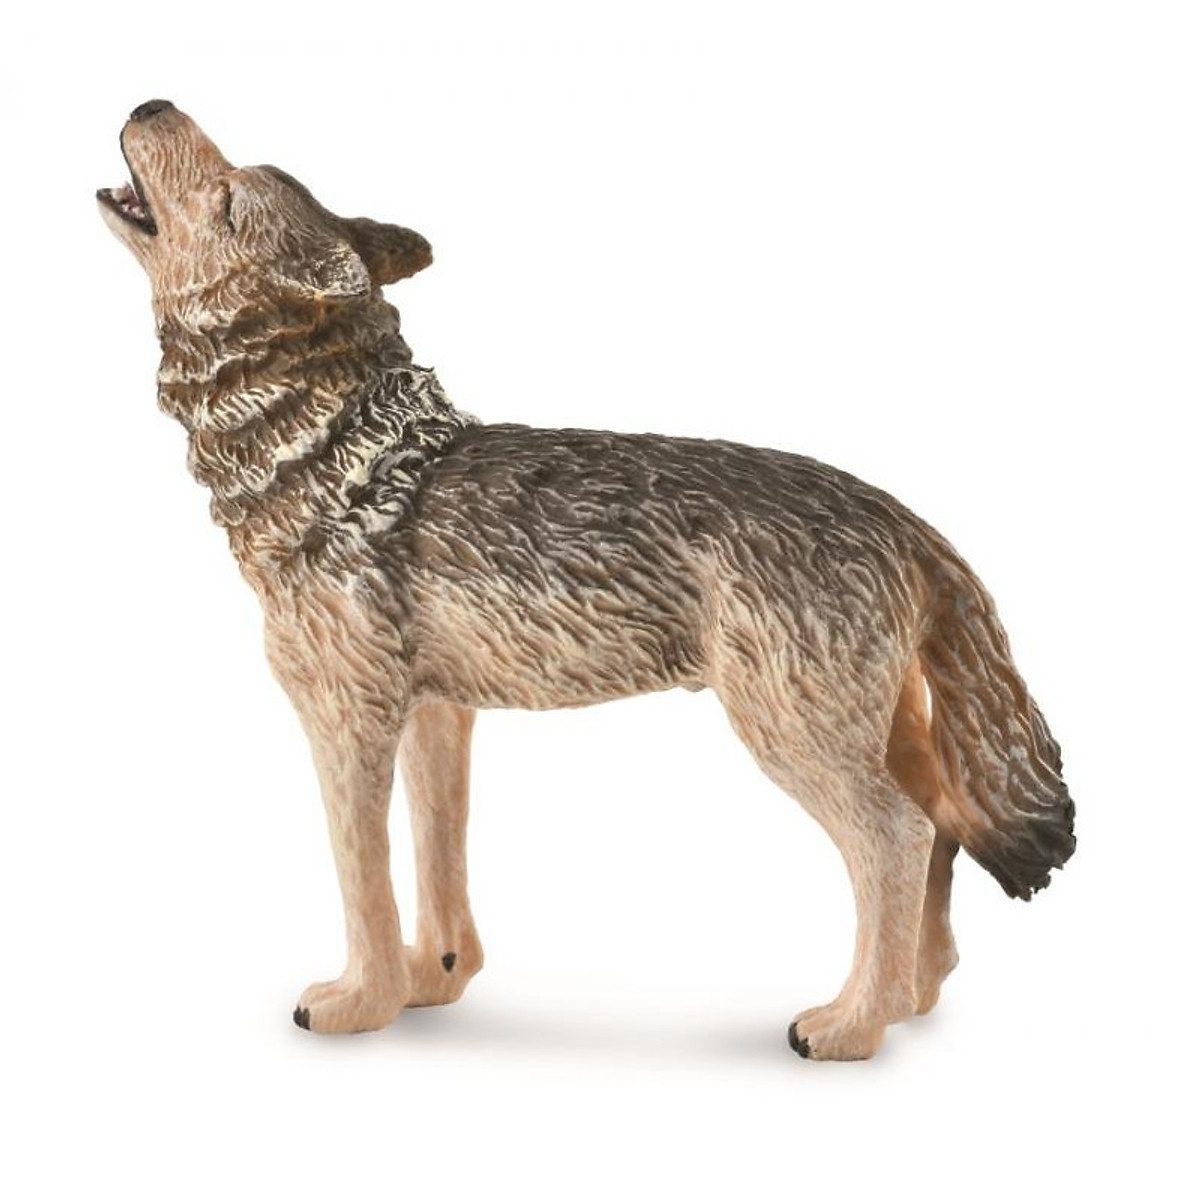 Đồ trang trí chó sói bằng gỗ có đèn LED trang trí phong cách Retro